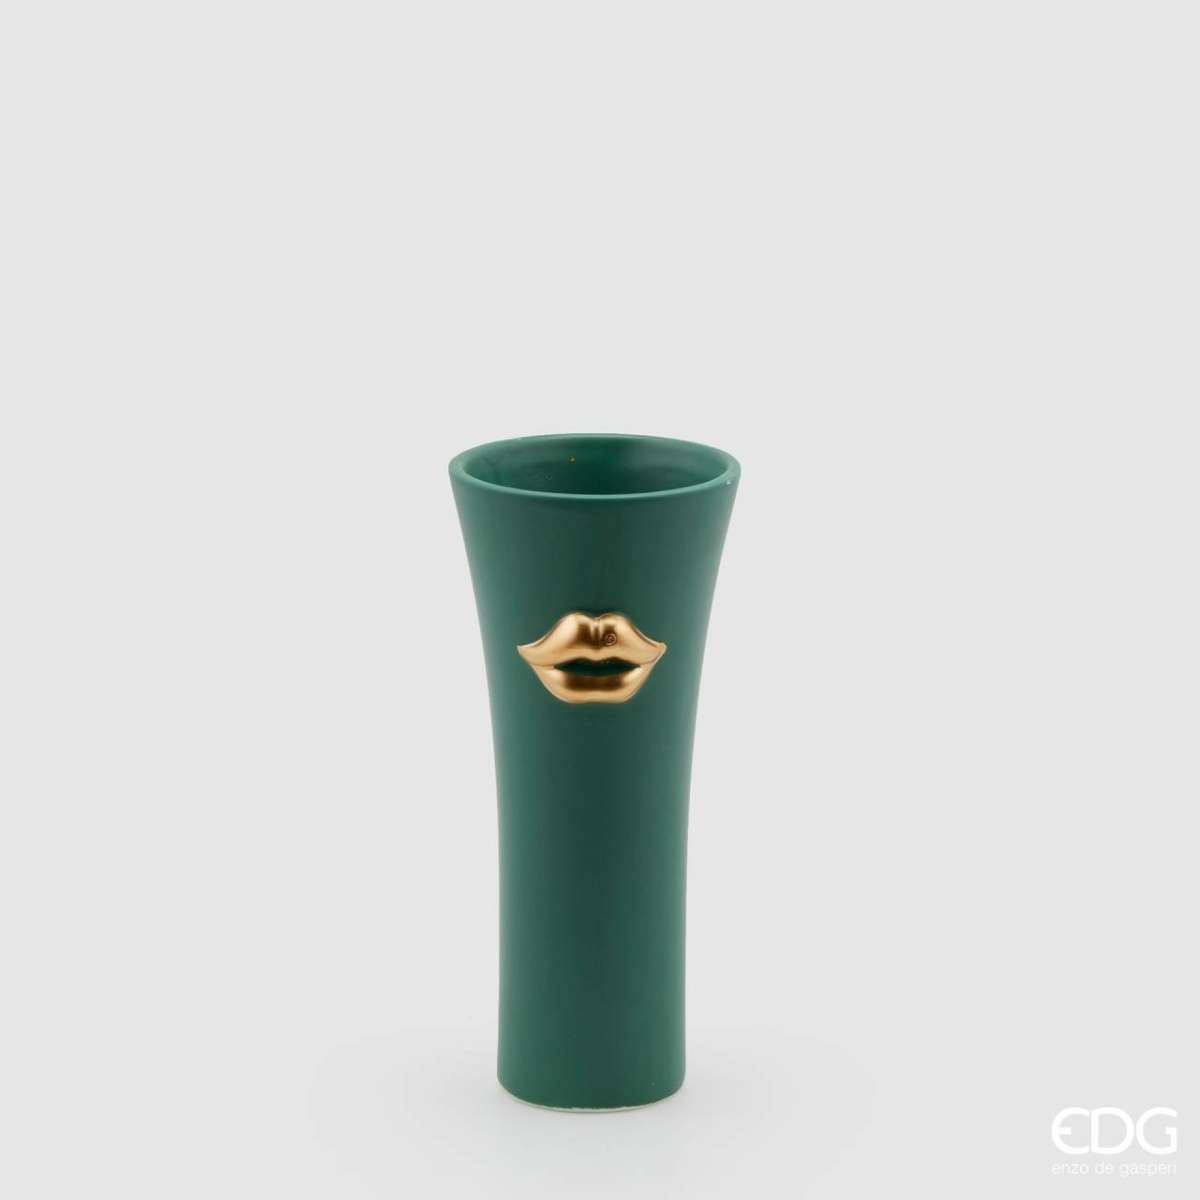 Immagine del prodotto Vaso Kiss in Ceramica Verde - 2 Misure | EDG Enzo De Gasperi